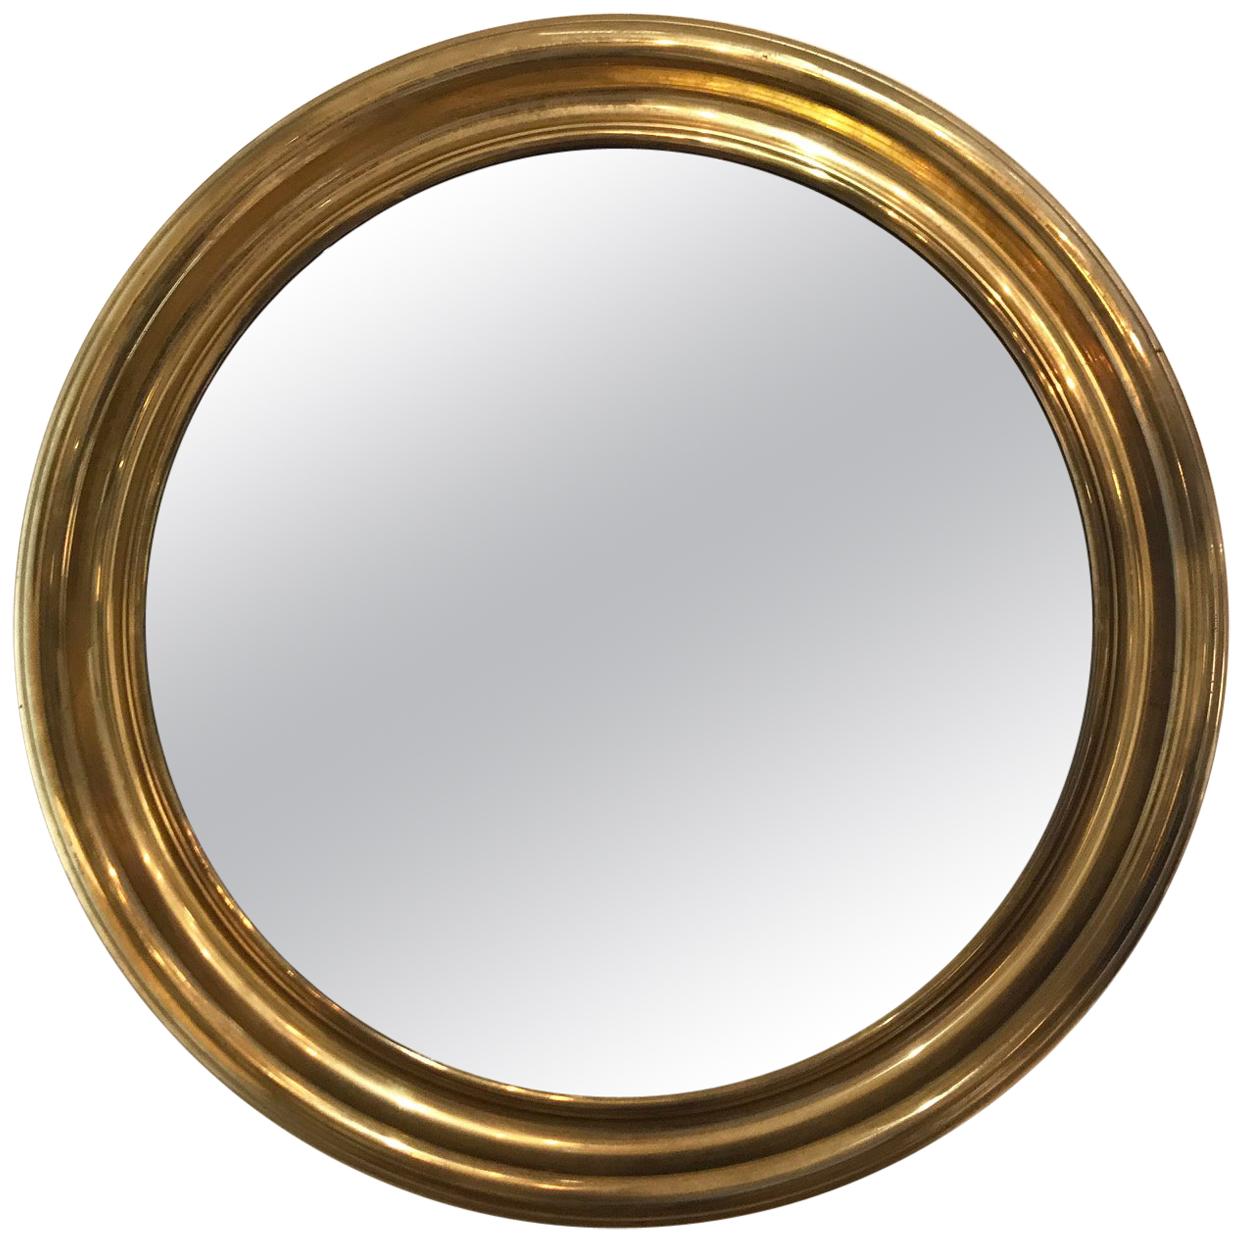 Brass 1950s Round Mirror